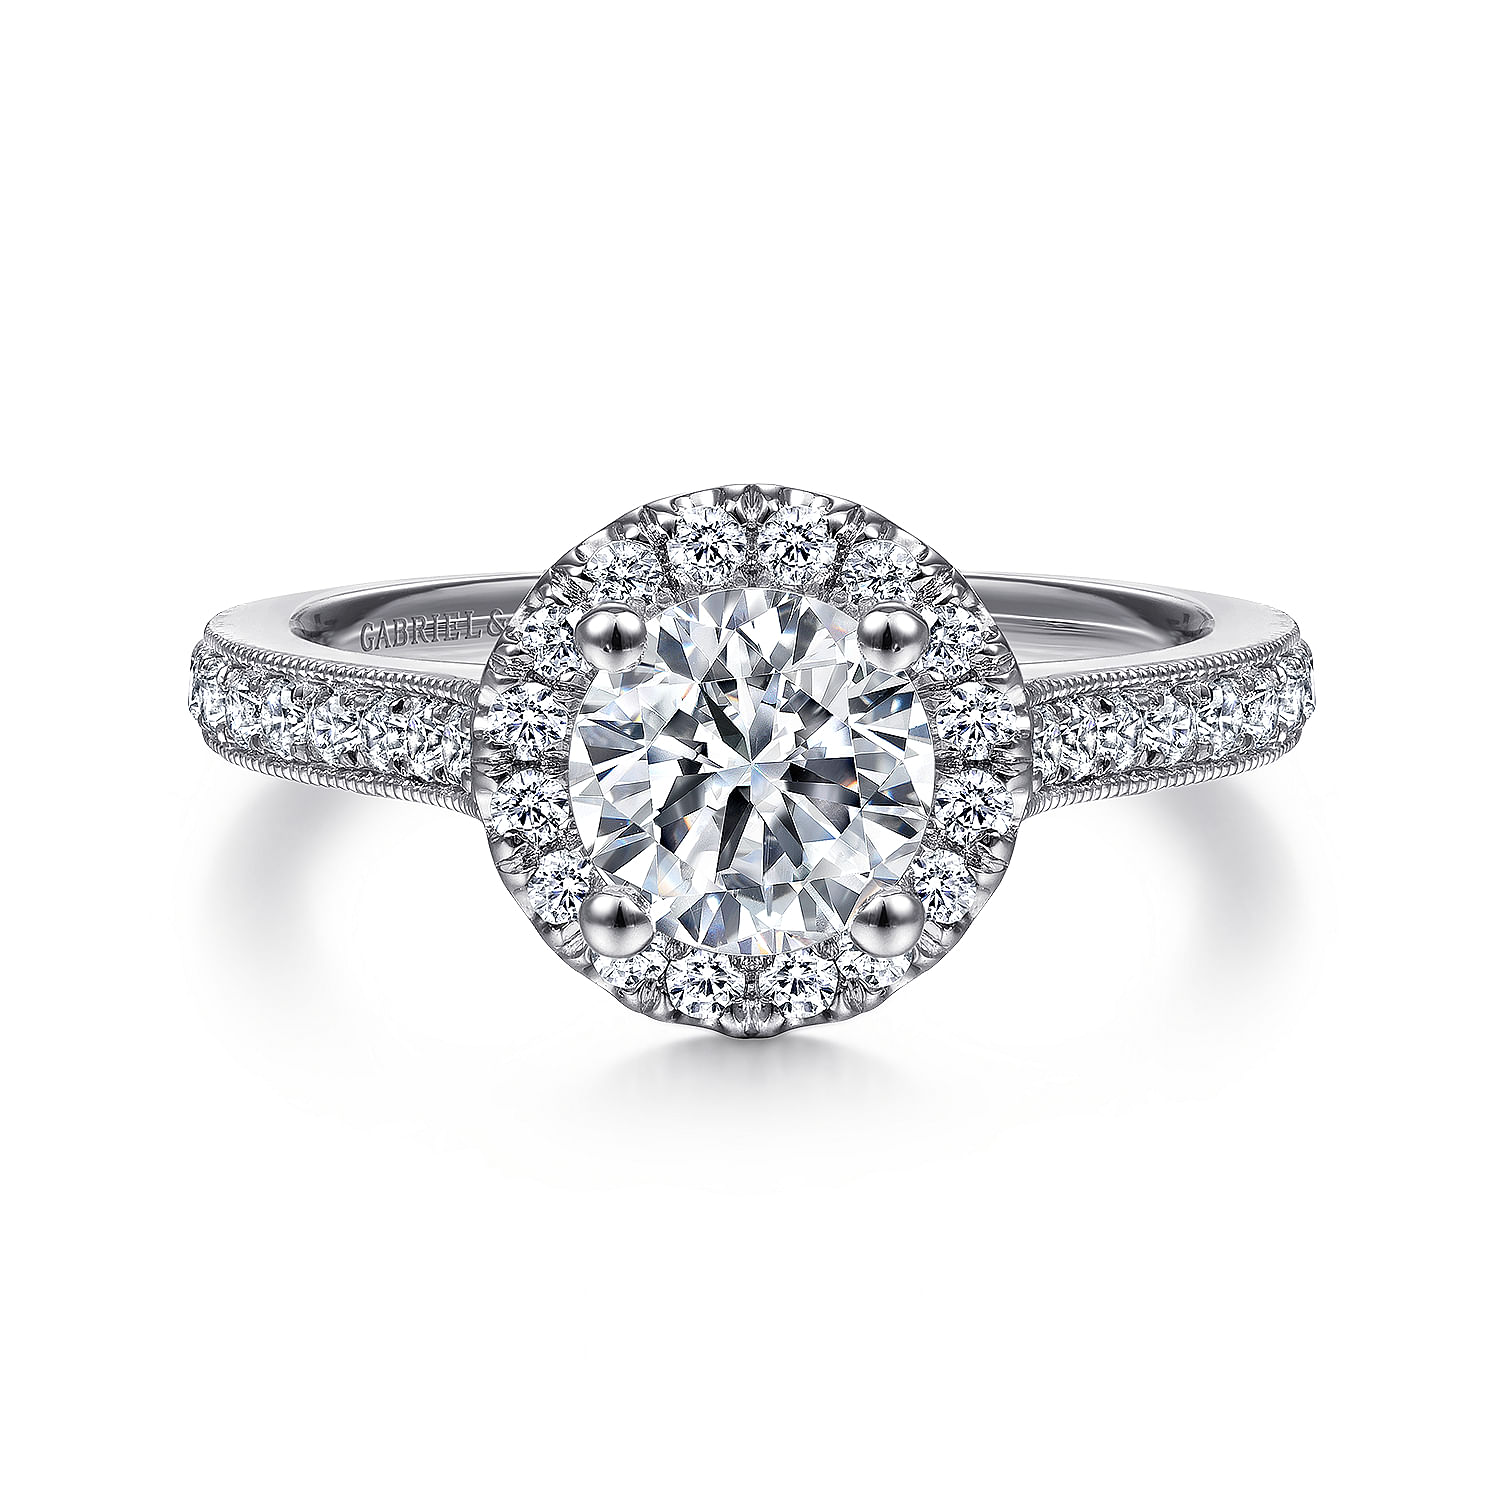 Bernadette---Vintage-Inspired-14K-White-Gold-Round-Halo-Diamond-Engagement-Ring1